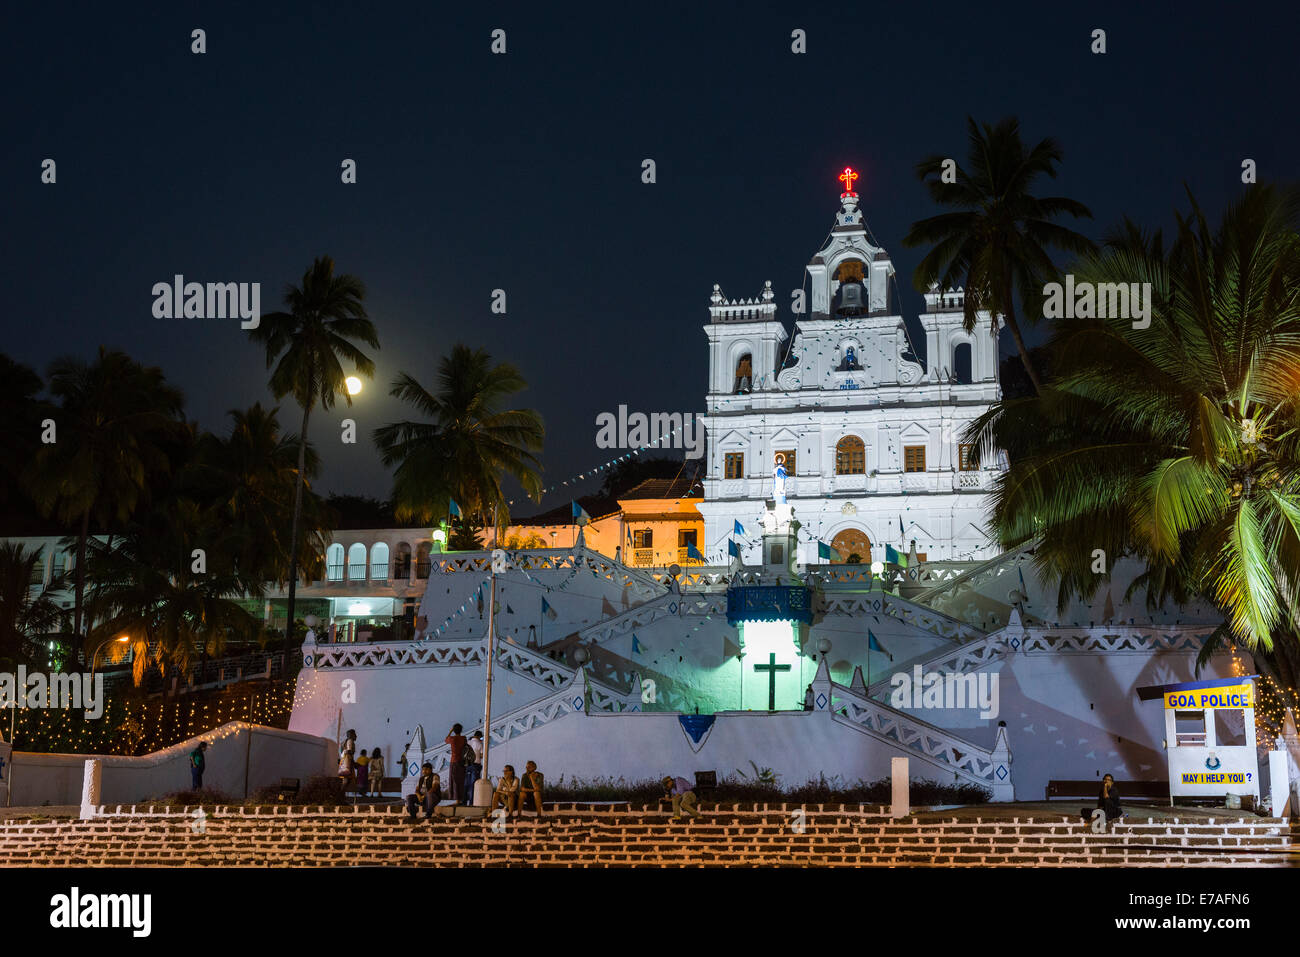 La Chiesa di Panaji, illuminata di notte, Panaji, Goa, India Foto Stock